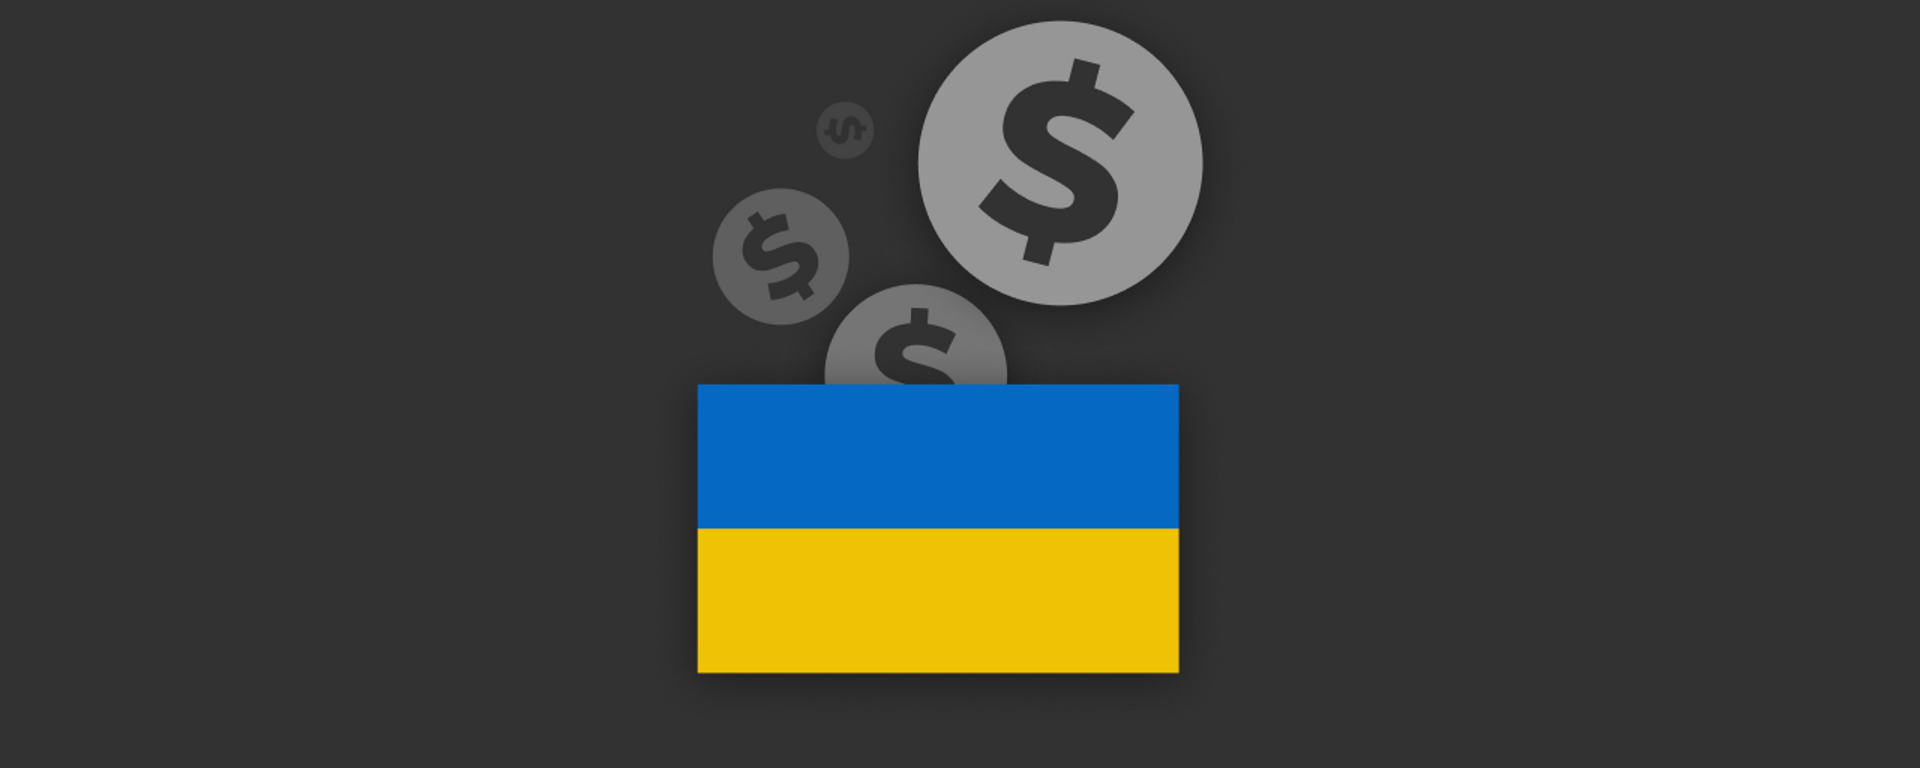 Quanto dinheiro a USAID alocou para a Ucrânia em 2022? - Sputnik Brasil, 1920, 23.01.2023